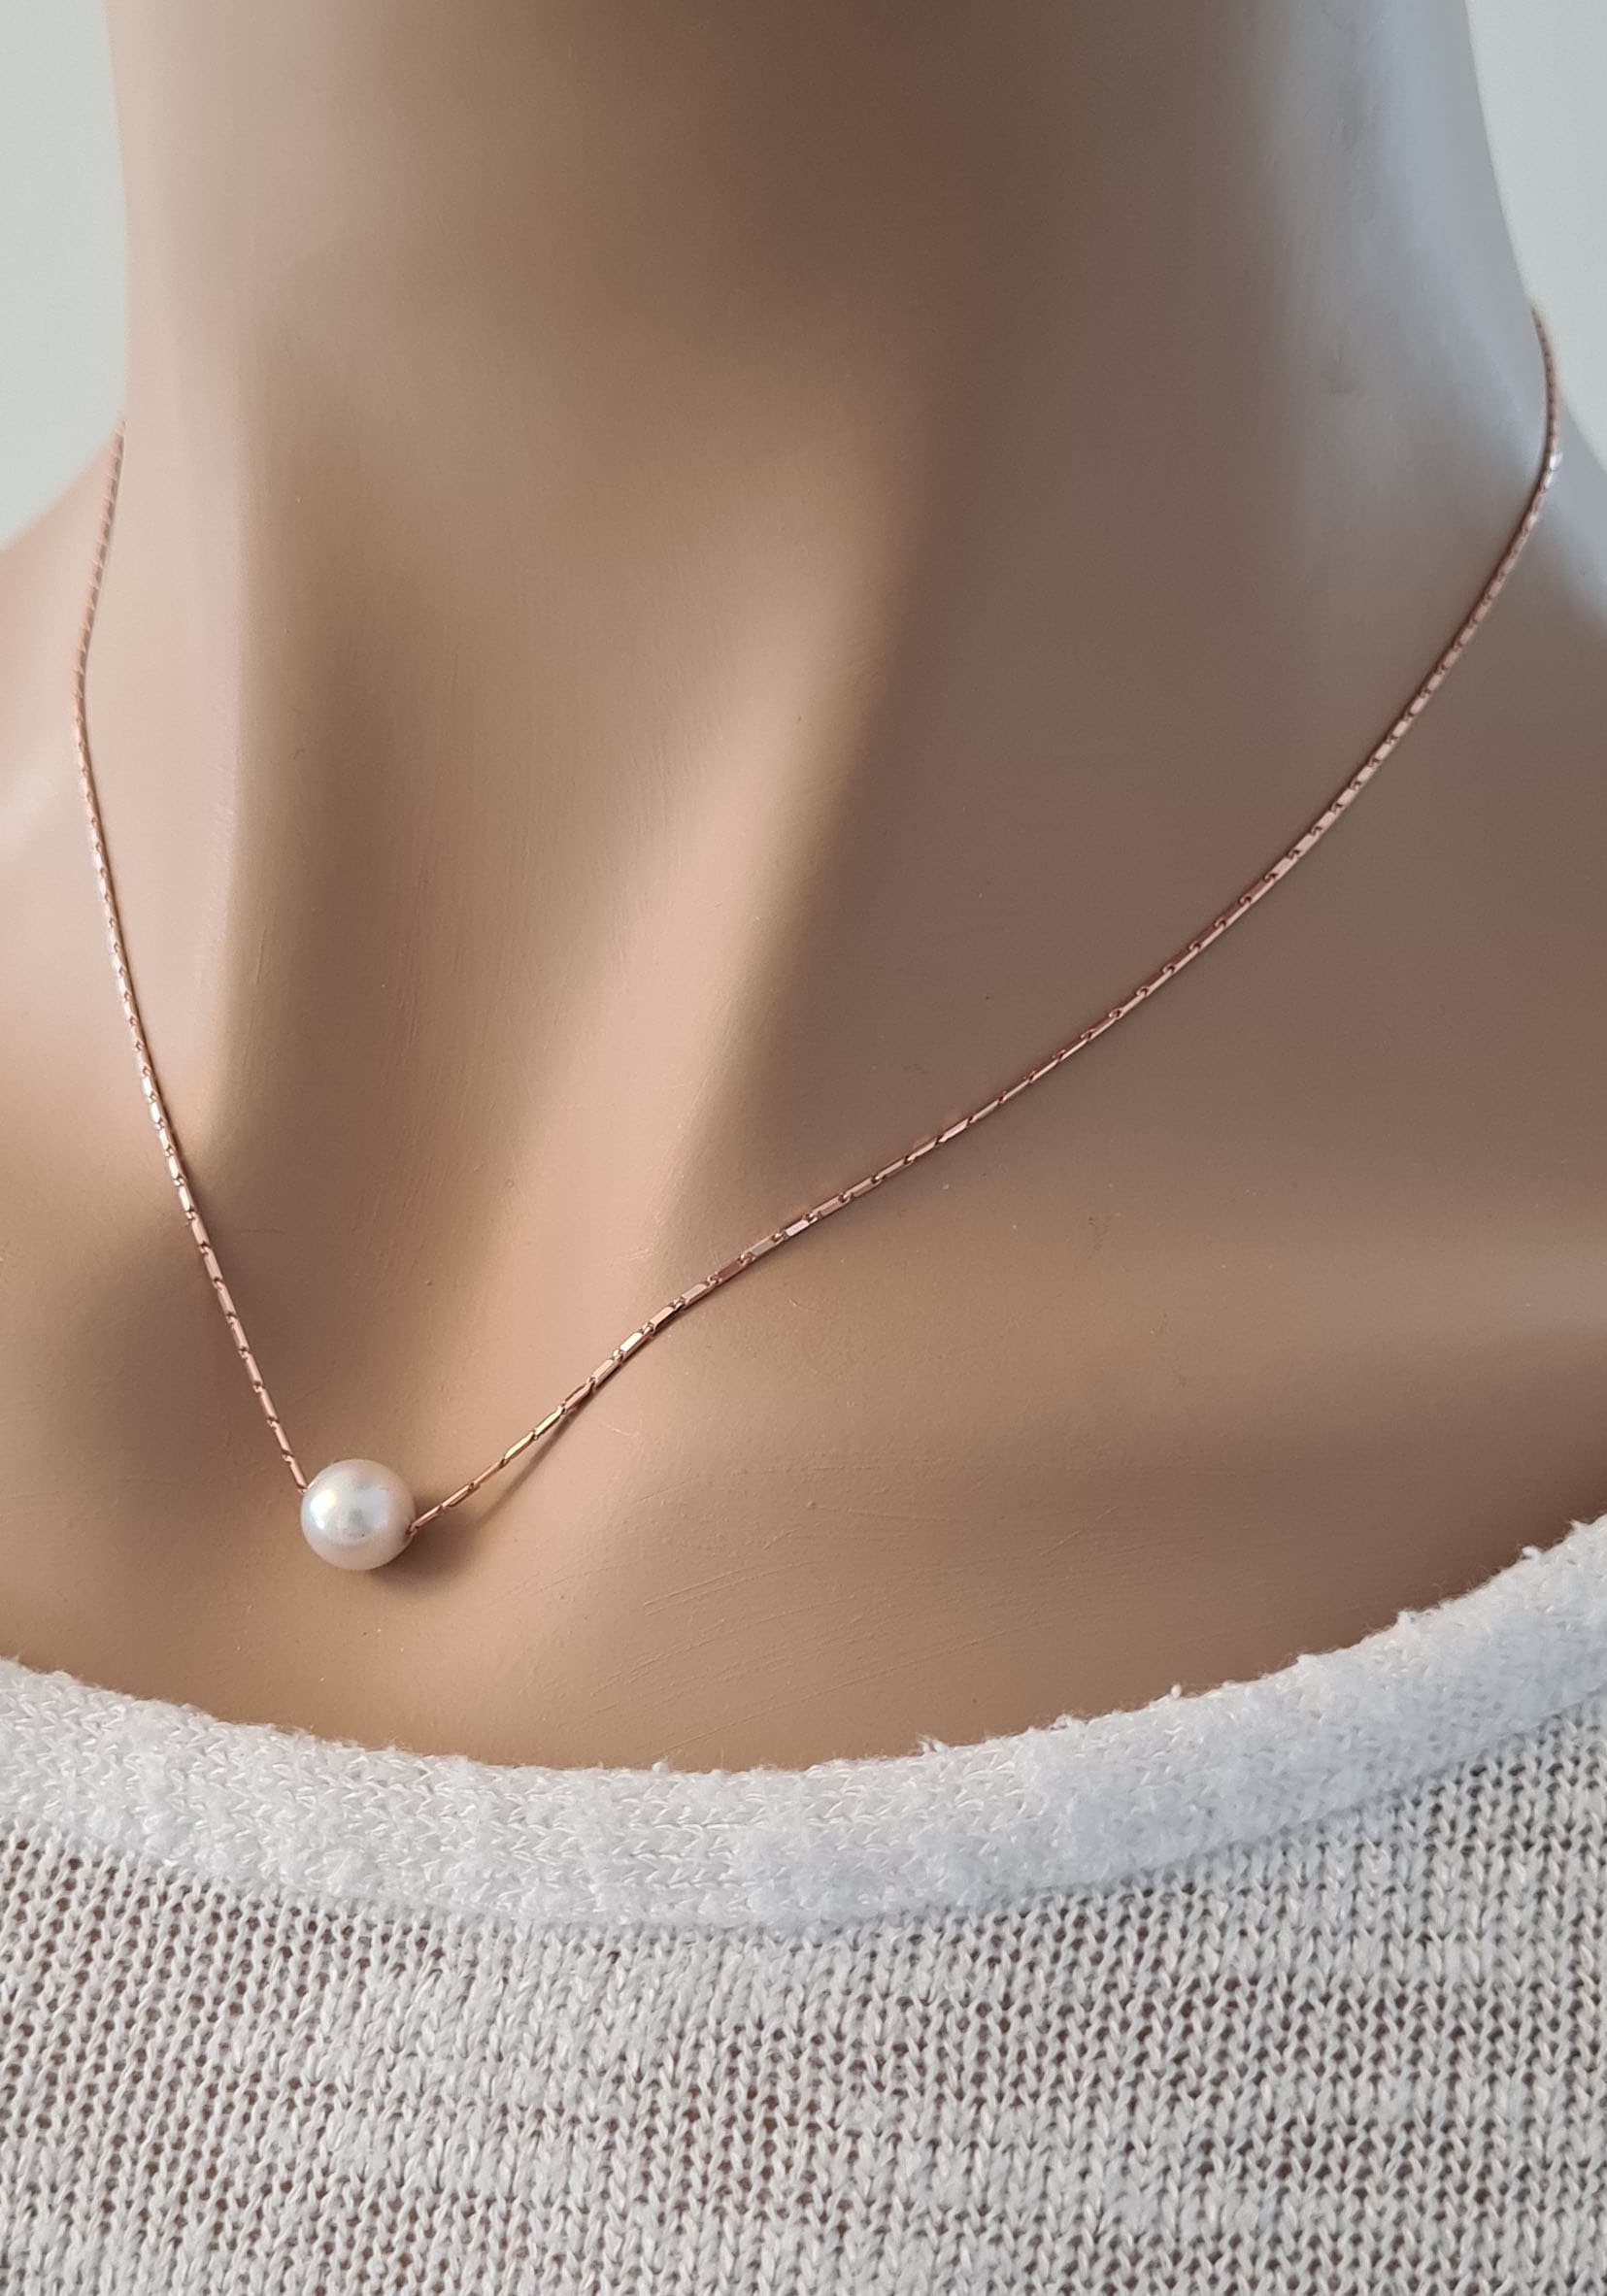 Germany Akoyazuchtperle »Schmuck Geschenk, - Halskette kaufen mit in Kette schwebend«, Anhänger mit Perle Made Firetti online